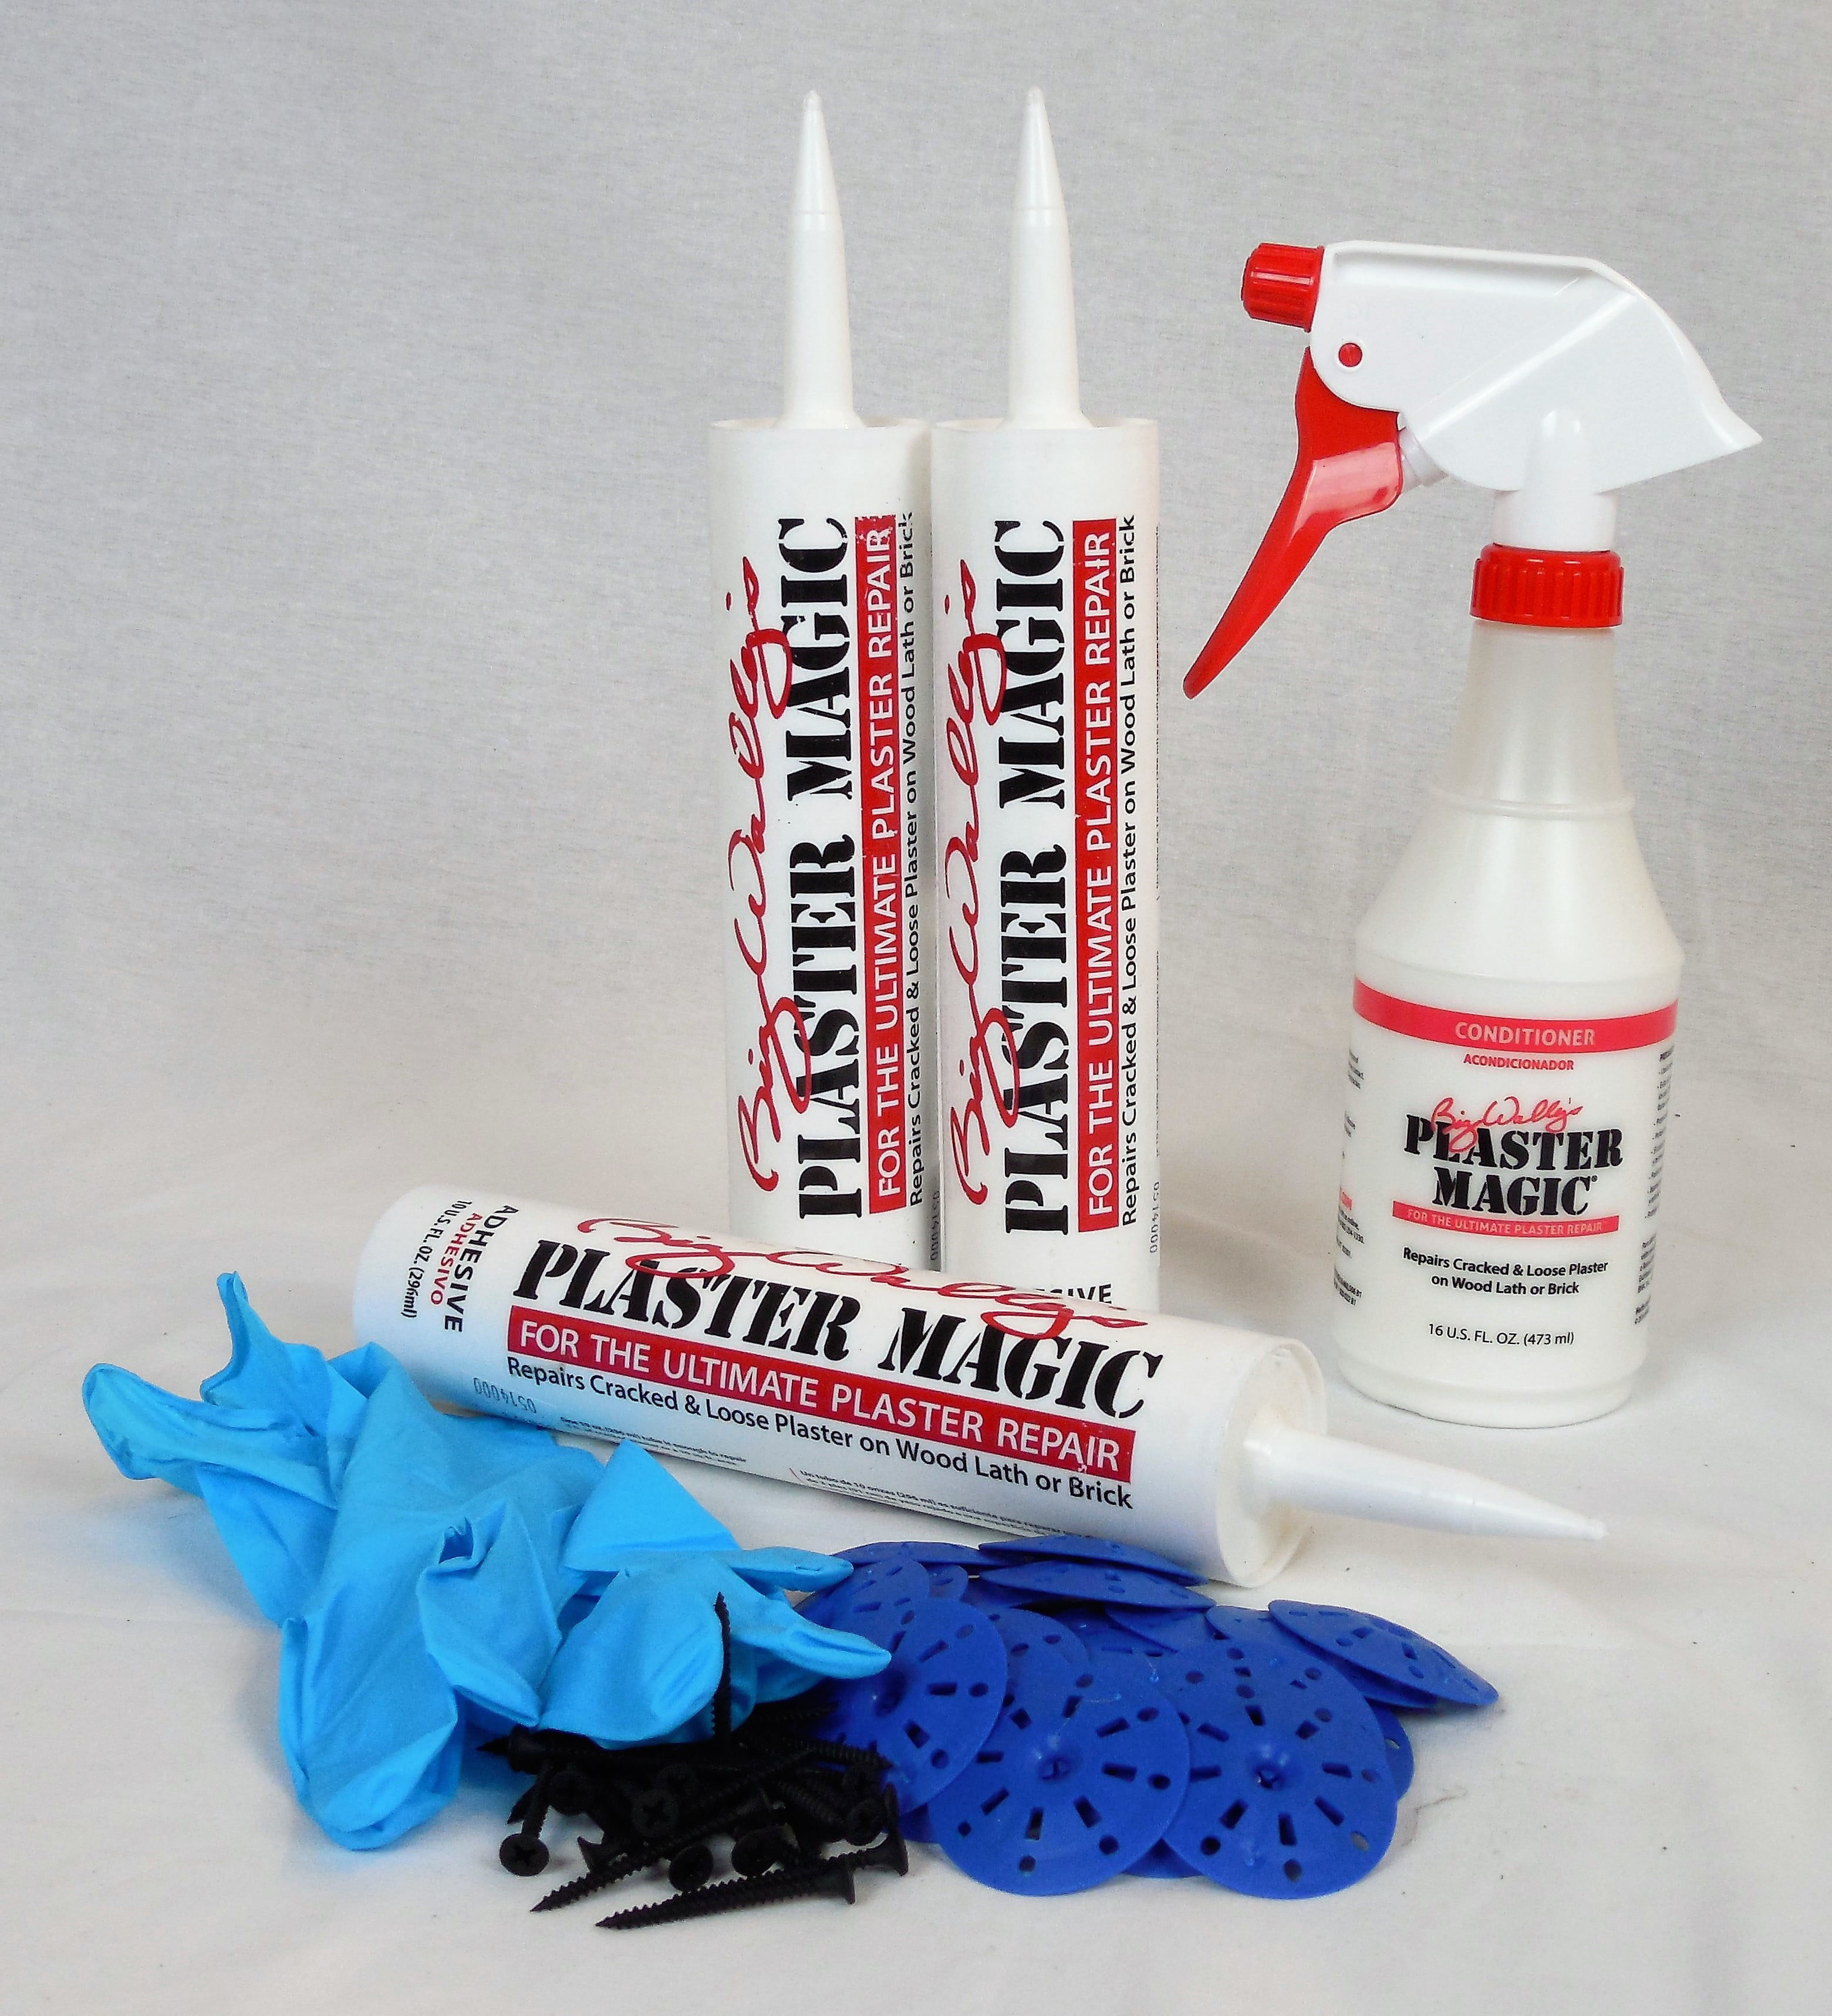 Plaster Magic Plaster Repair Kits  Plaster repair, Plastic clamps, Brick  repair